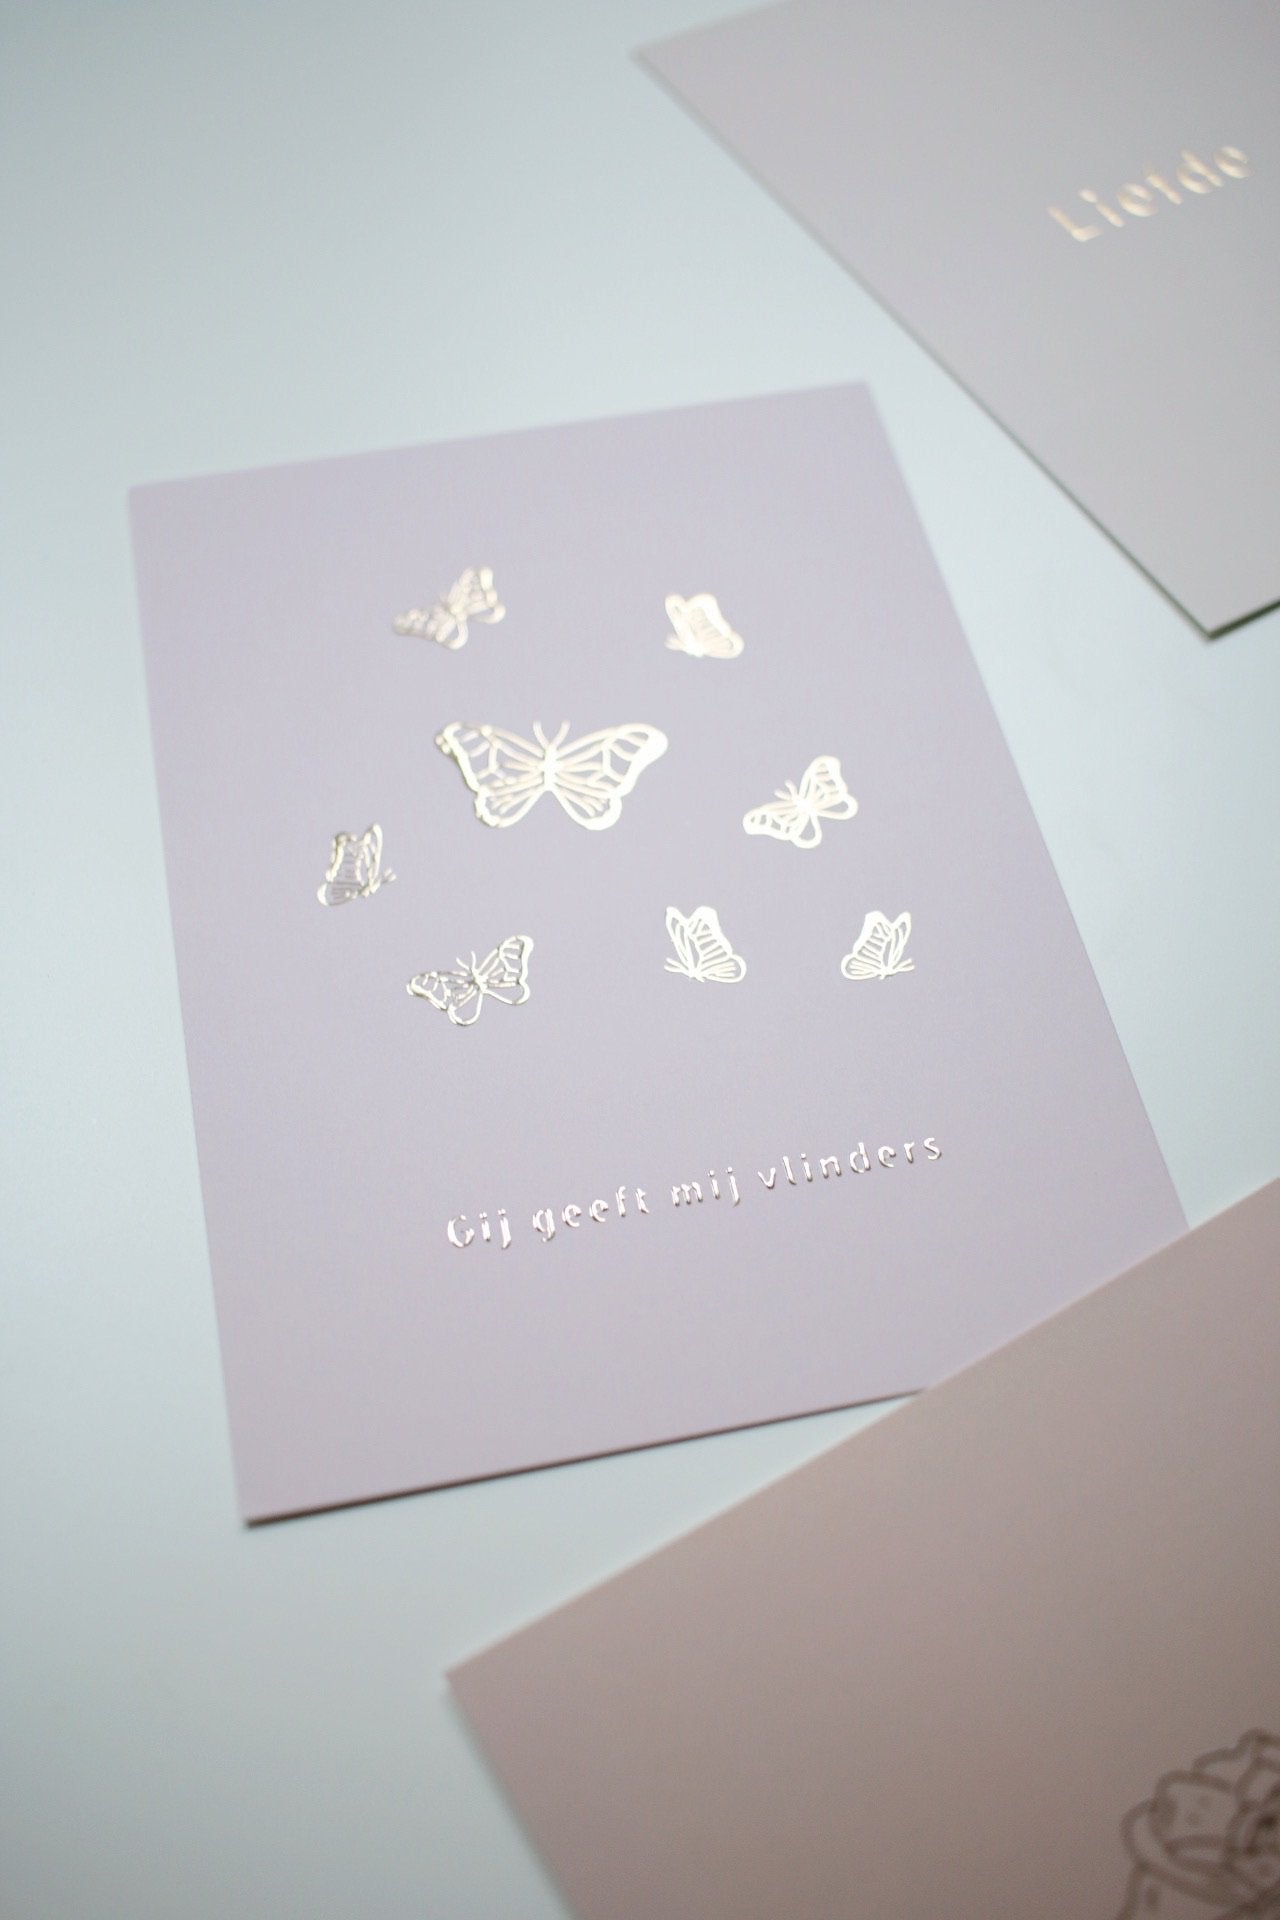 Gij geeft mij vlinders Greeting Cards - Honeypress Design